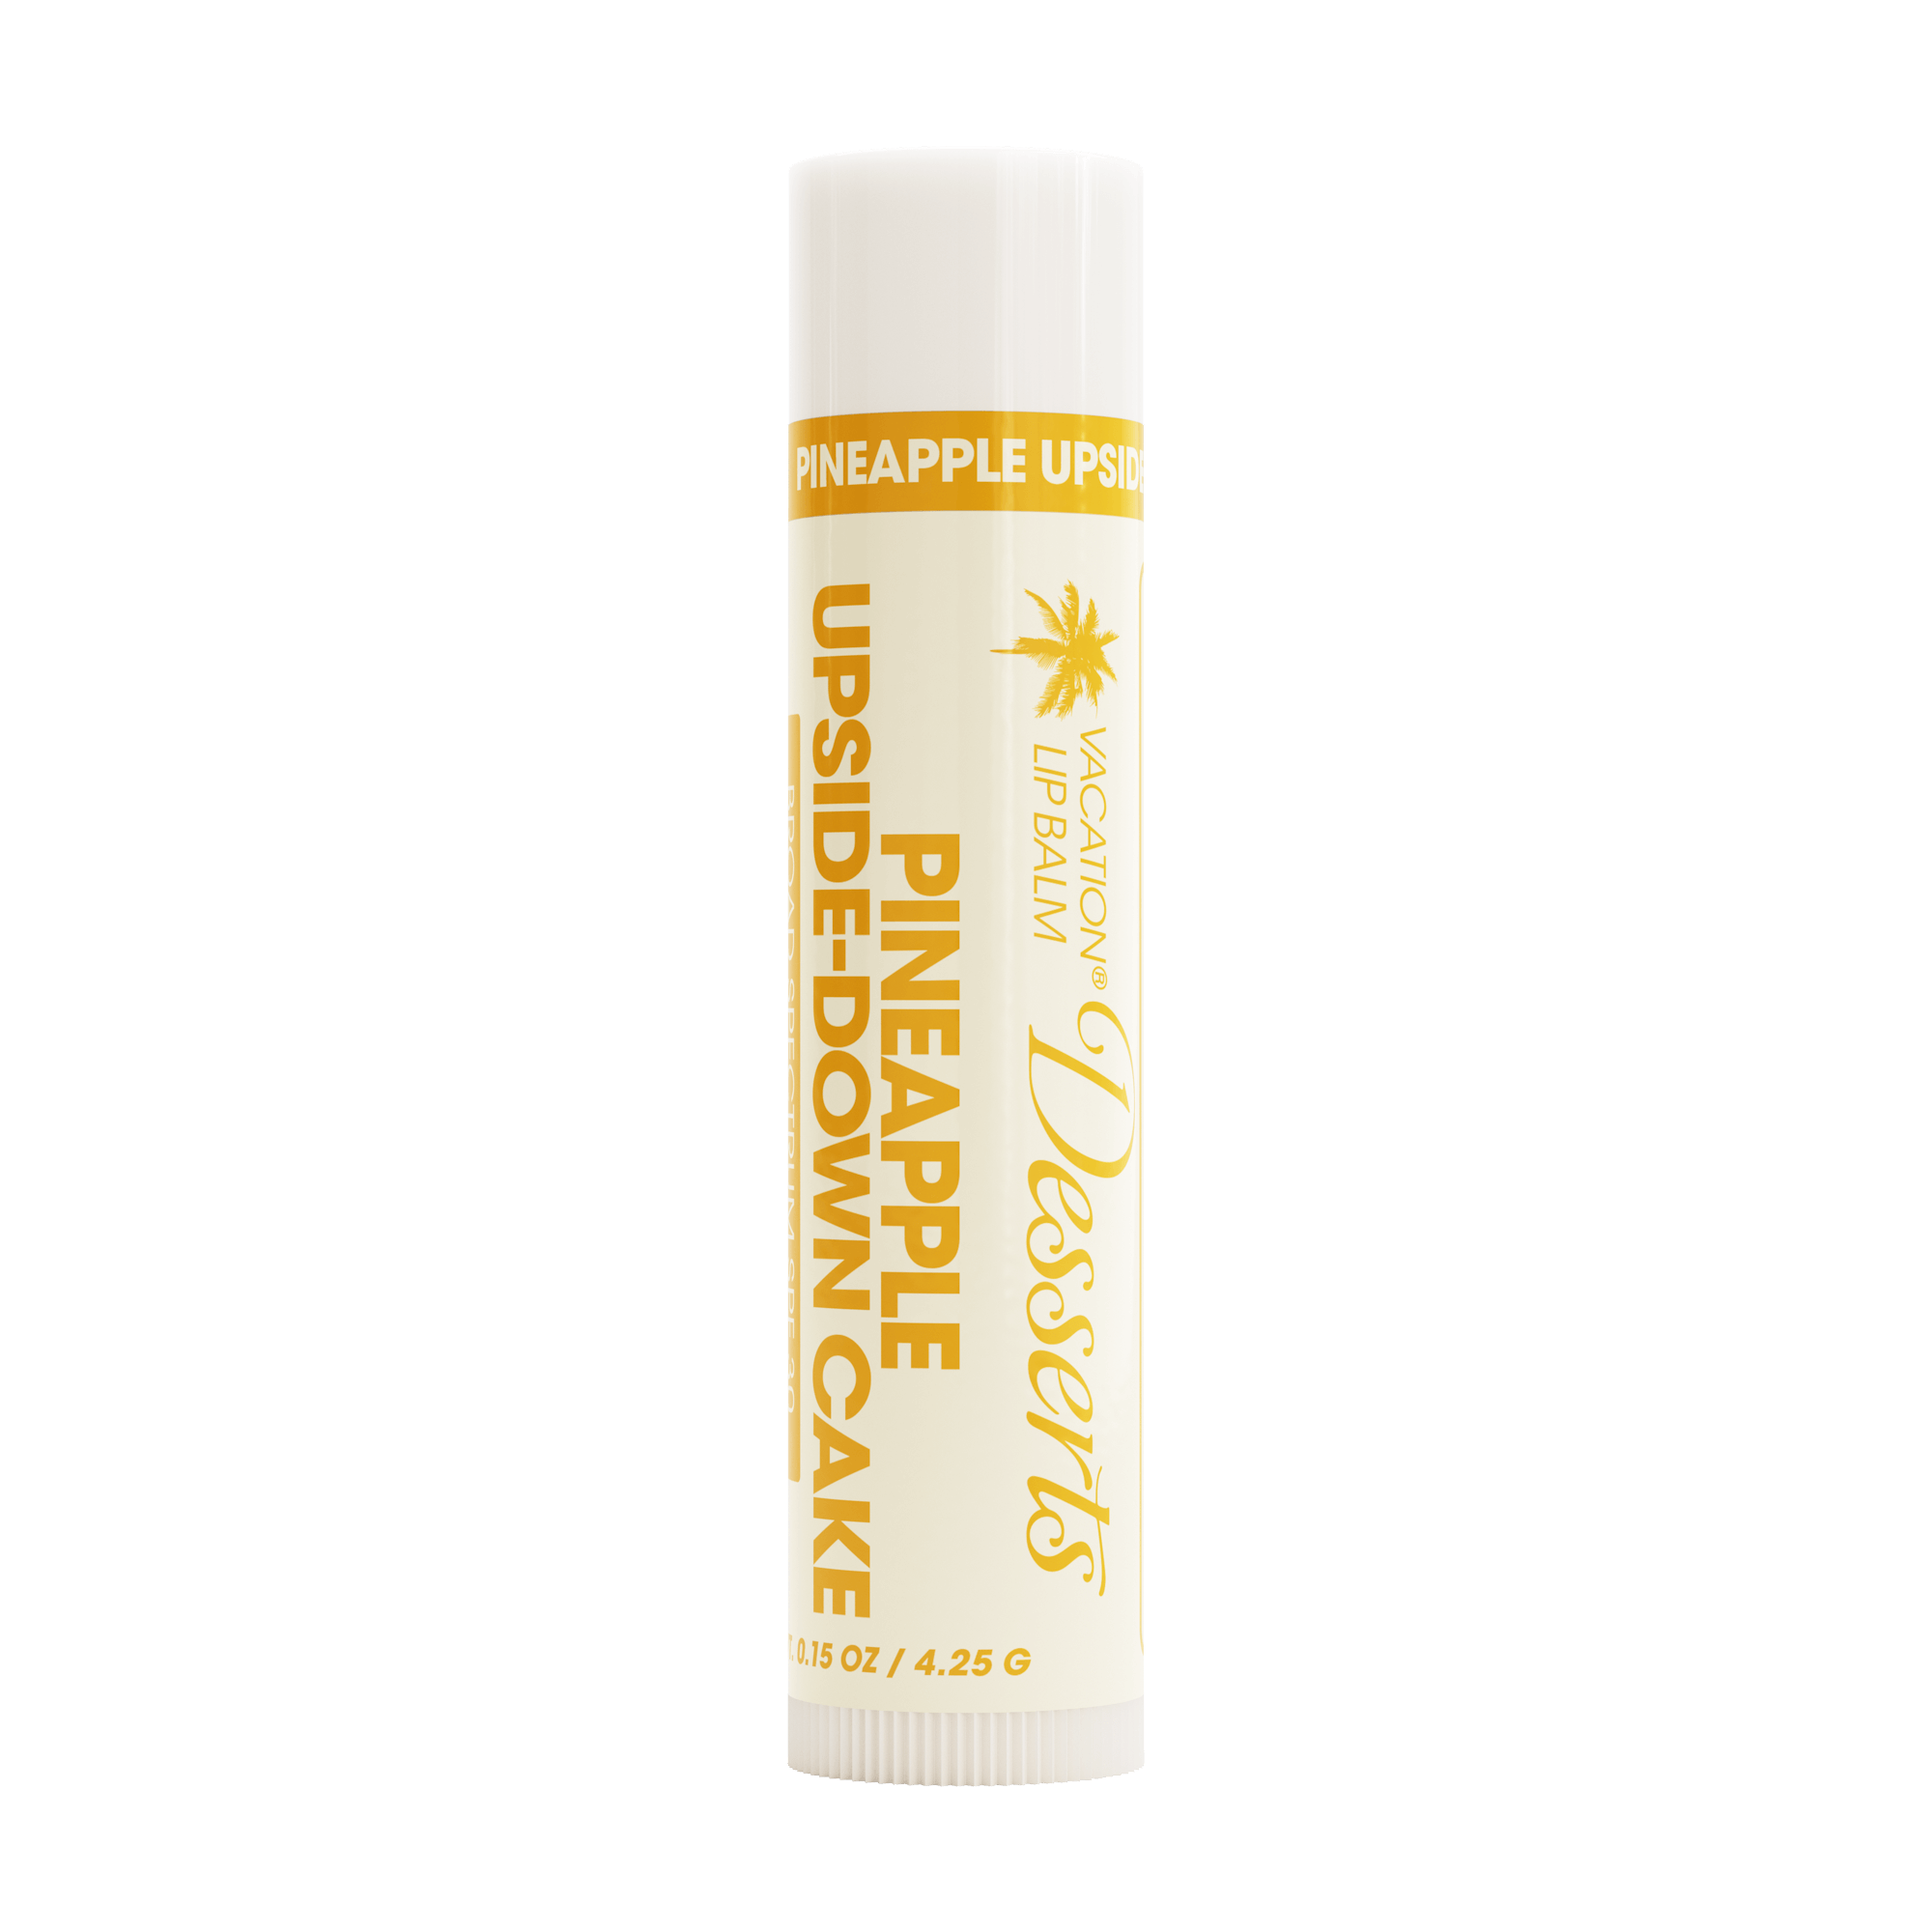 PREVENTA Pineapple Upside SPF 30 Lip Balm Sunscreen